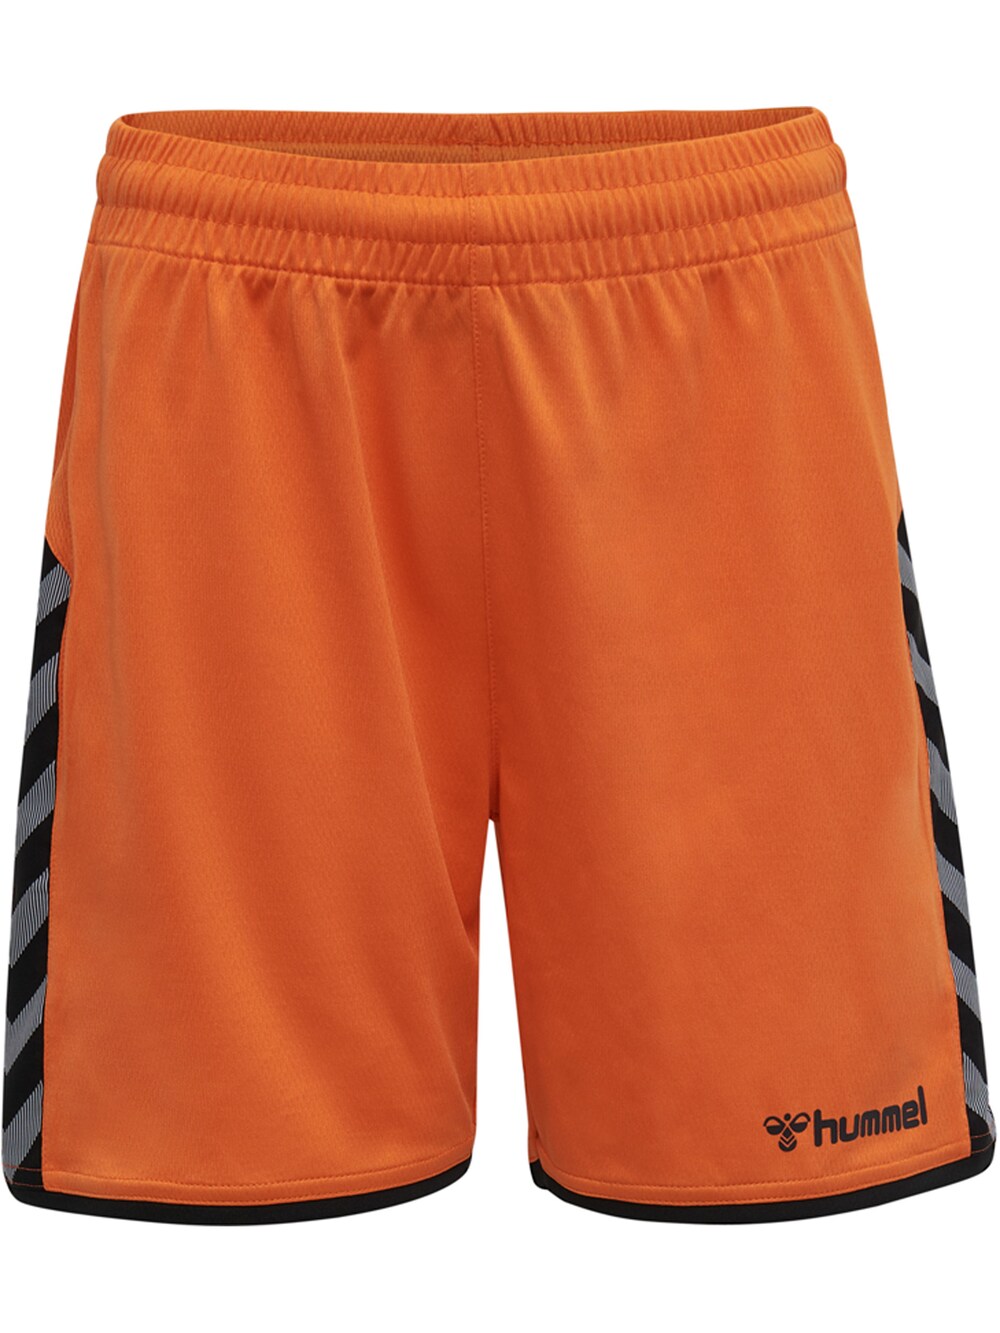 Обычные тренировочные брюки Hummel, омар обычные тренировочные брюки hummel черный